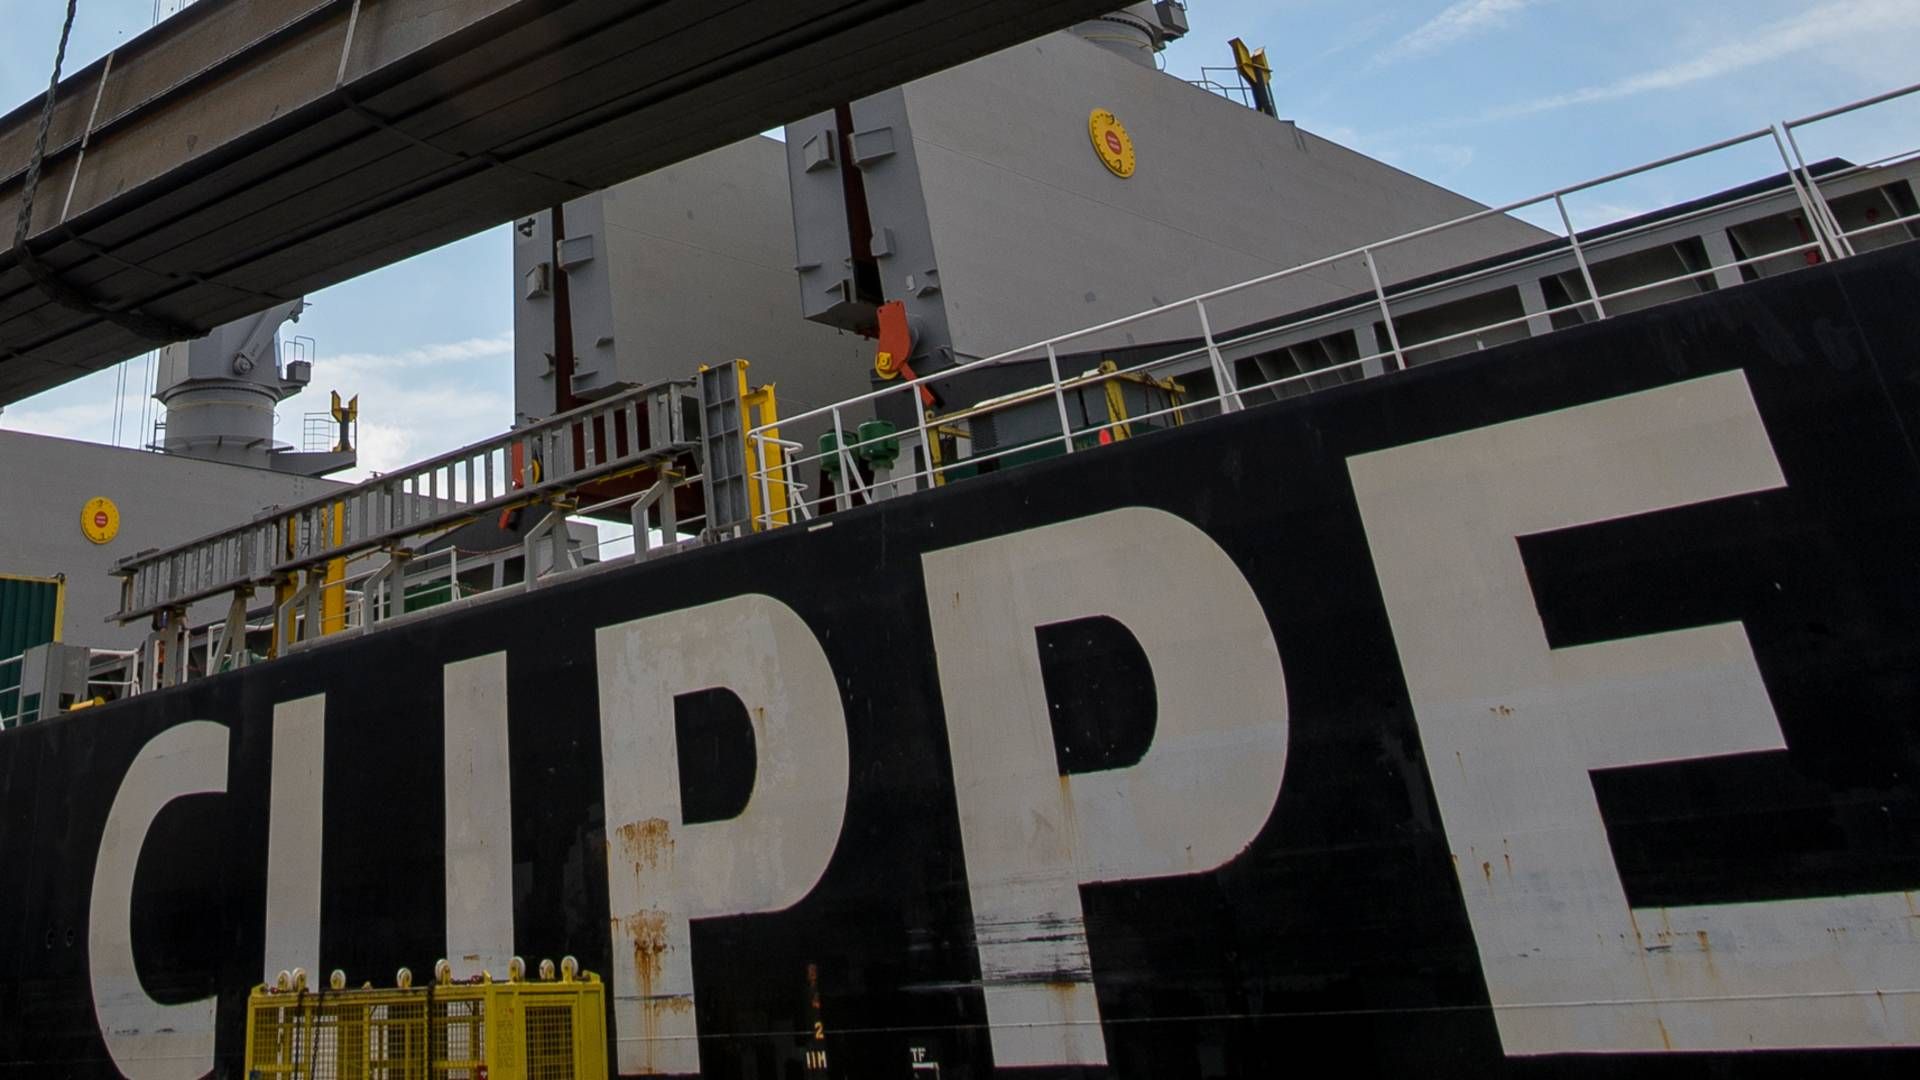 Sagen drejer sig om beskatningen af et krydstogtsskib - og ikke tørlastsskibe, som Clipper primært beskæftiger sig med. | Foto: PR / Clipper Group